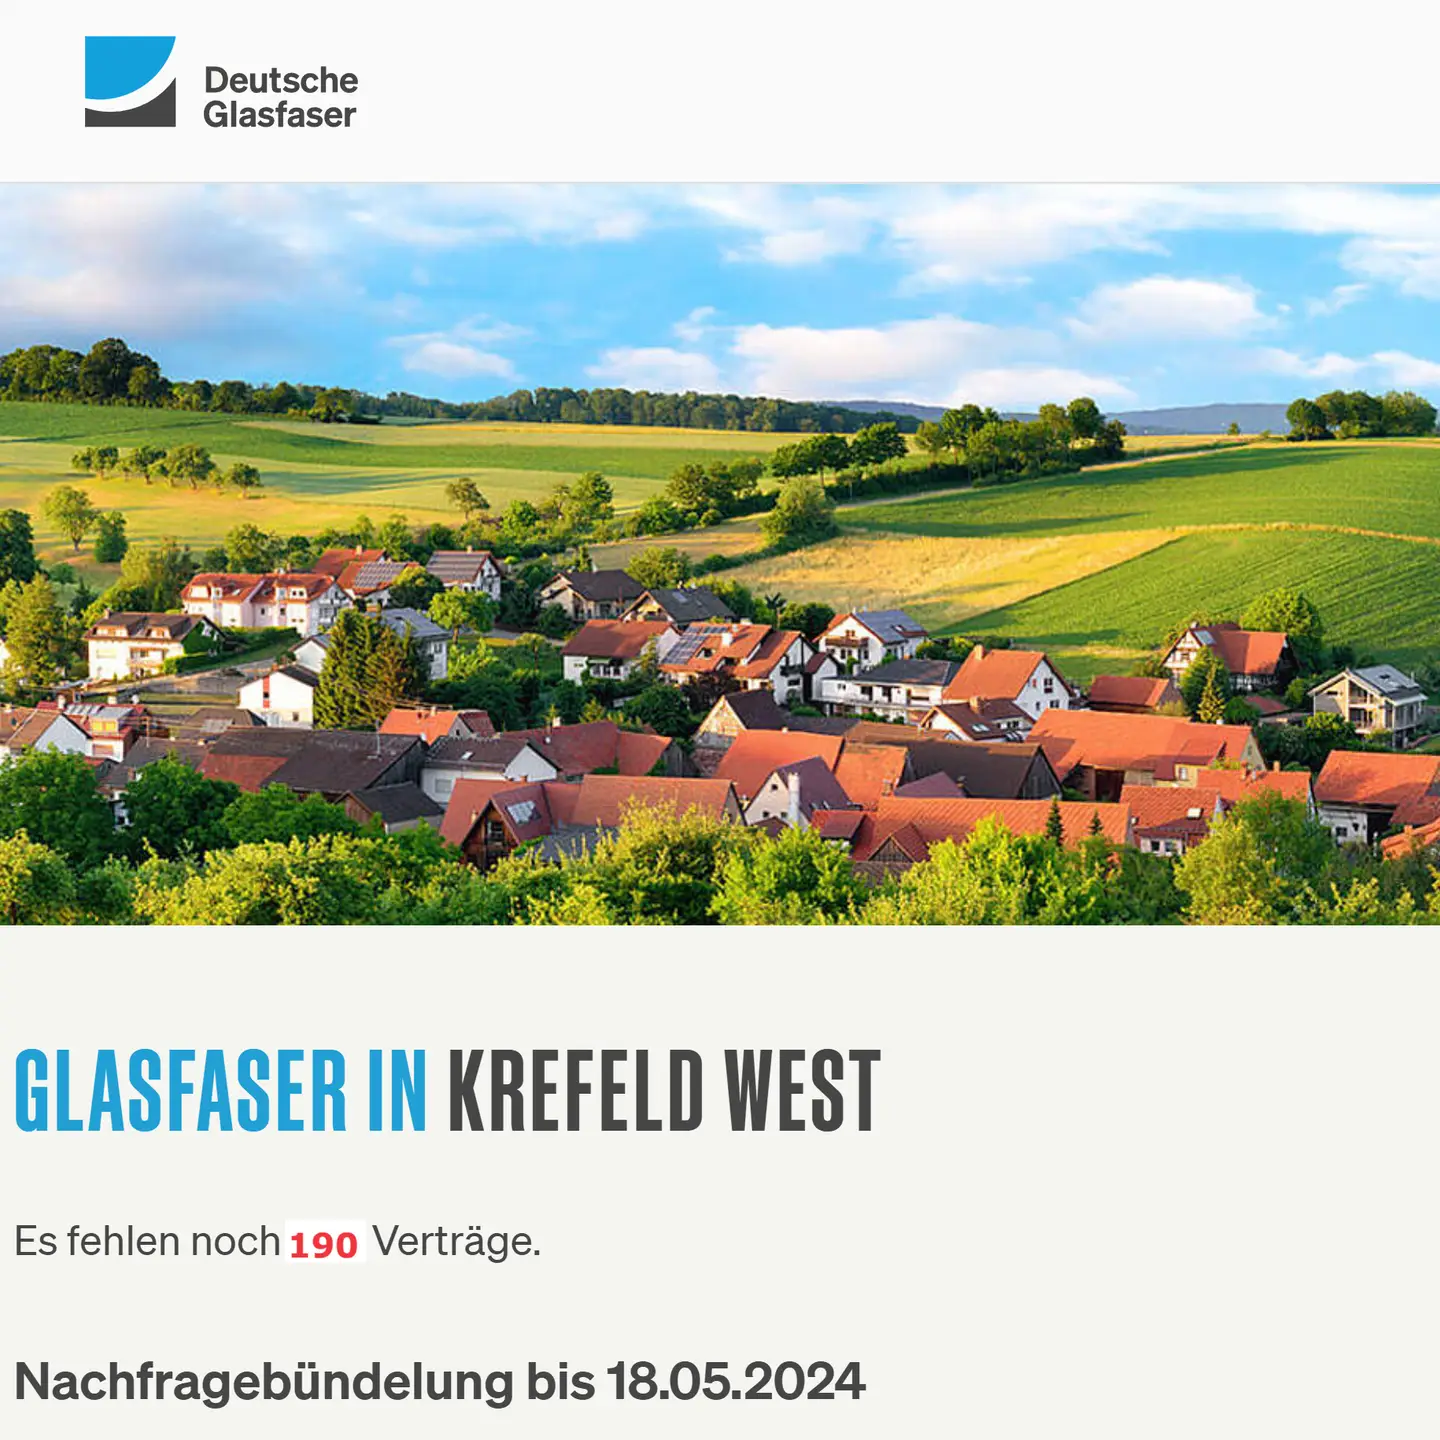 Screenshot von "Deutsche Glasfaser", oben DG Logo, ein Landschaftsbild, Schriftzüge "Glasfaser in Krefeld-West", Nachfragebündelung bis 18.5.2024, Anzeige des aktuellen Stand: Es fehlen noch 190 Anträge 